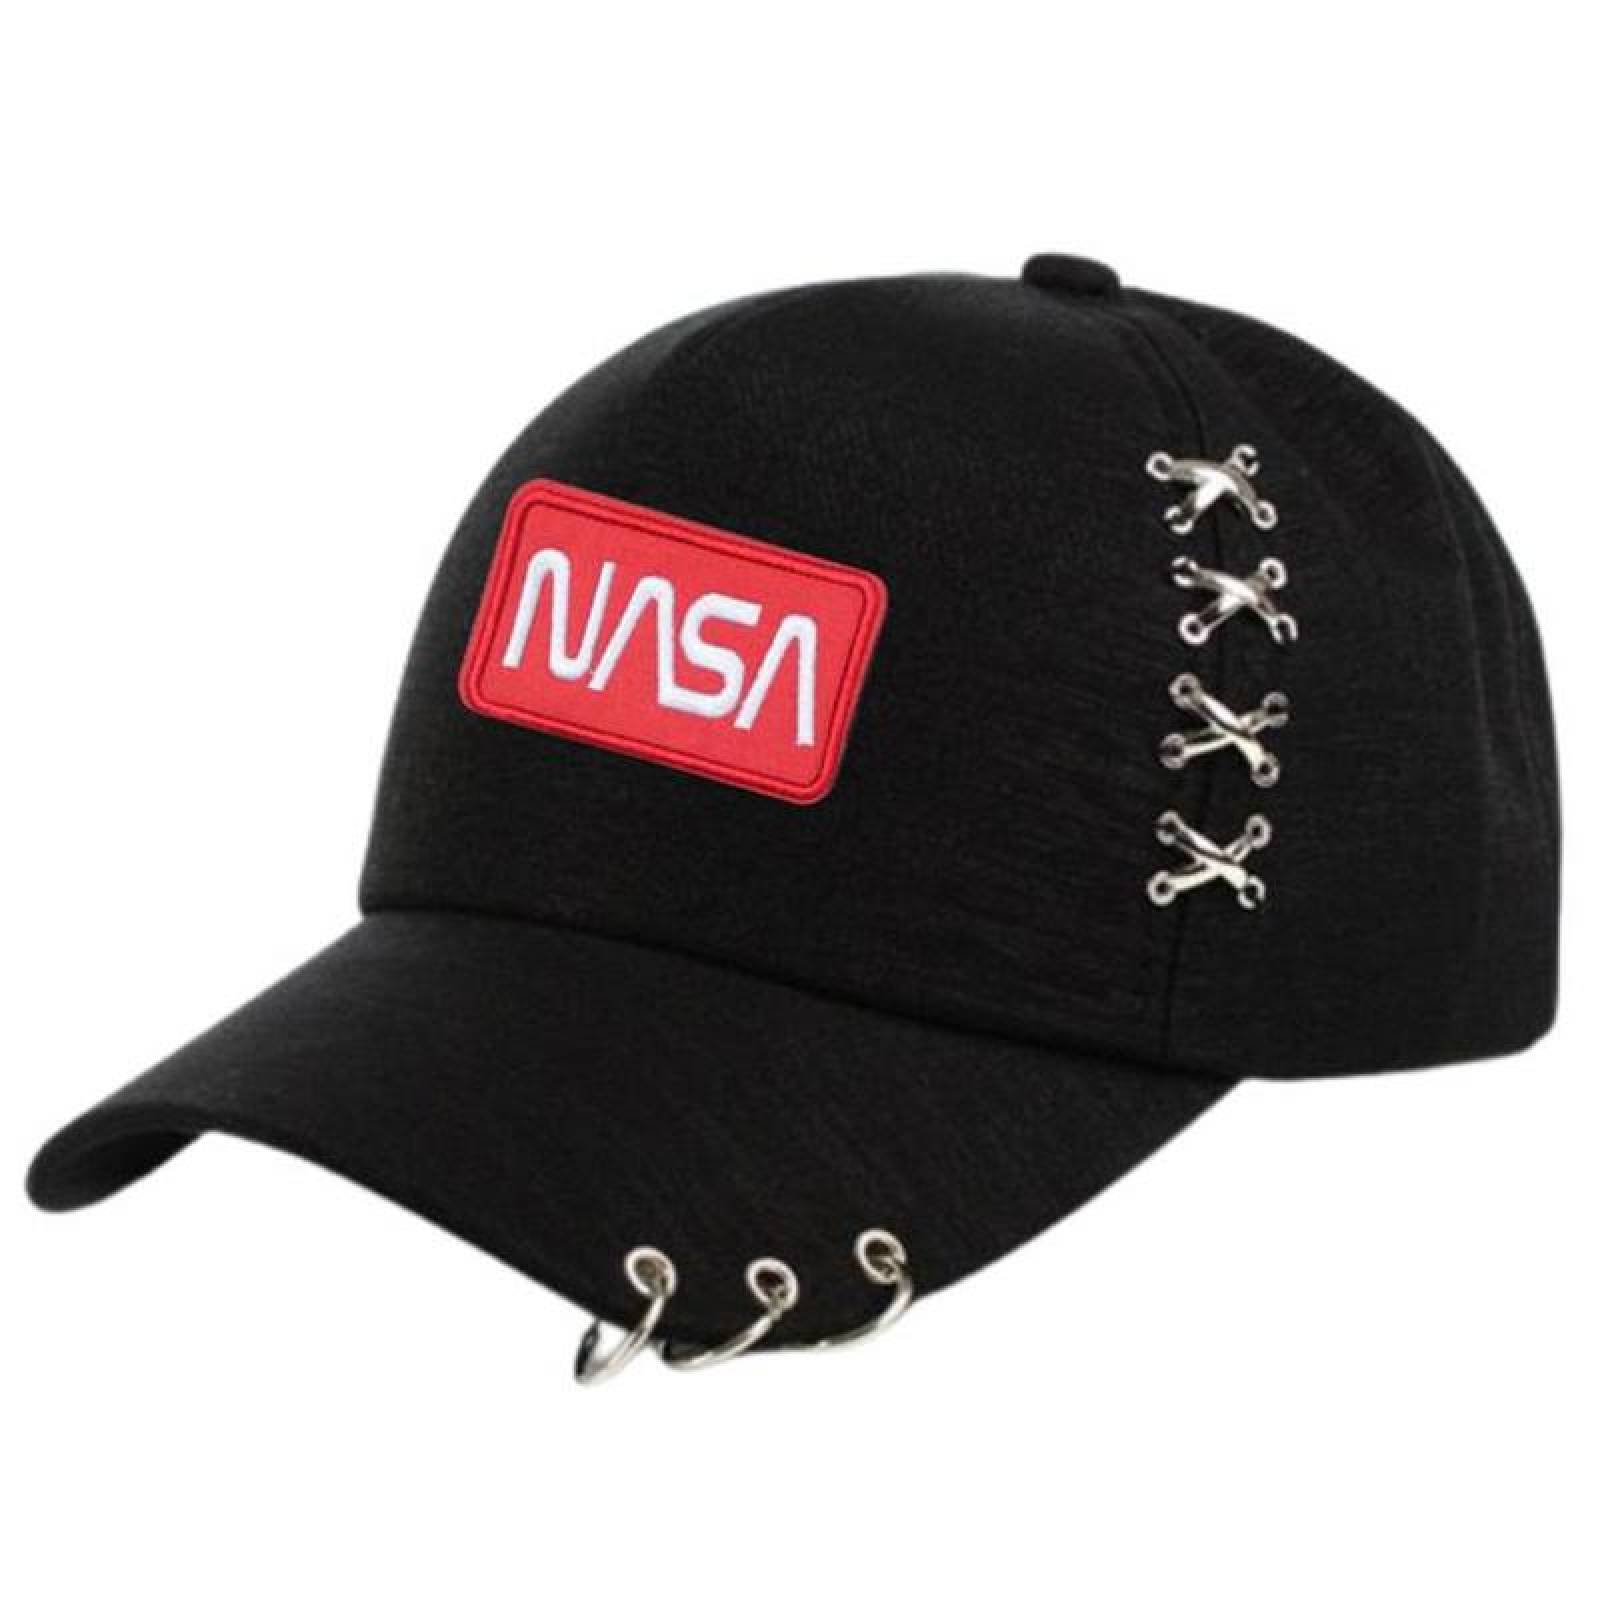 NASA Parche para Mochilas MXNAA-002-3 2 Parches Nasa 9,1x4,1cm Rojo Blanco  Bordado con Velcro, Nasa04